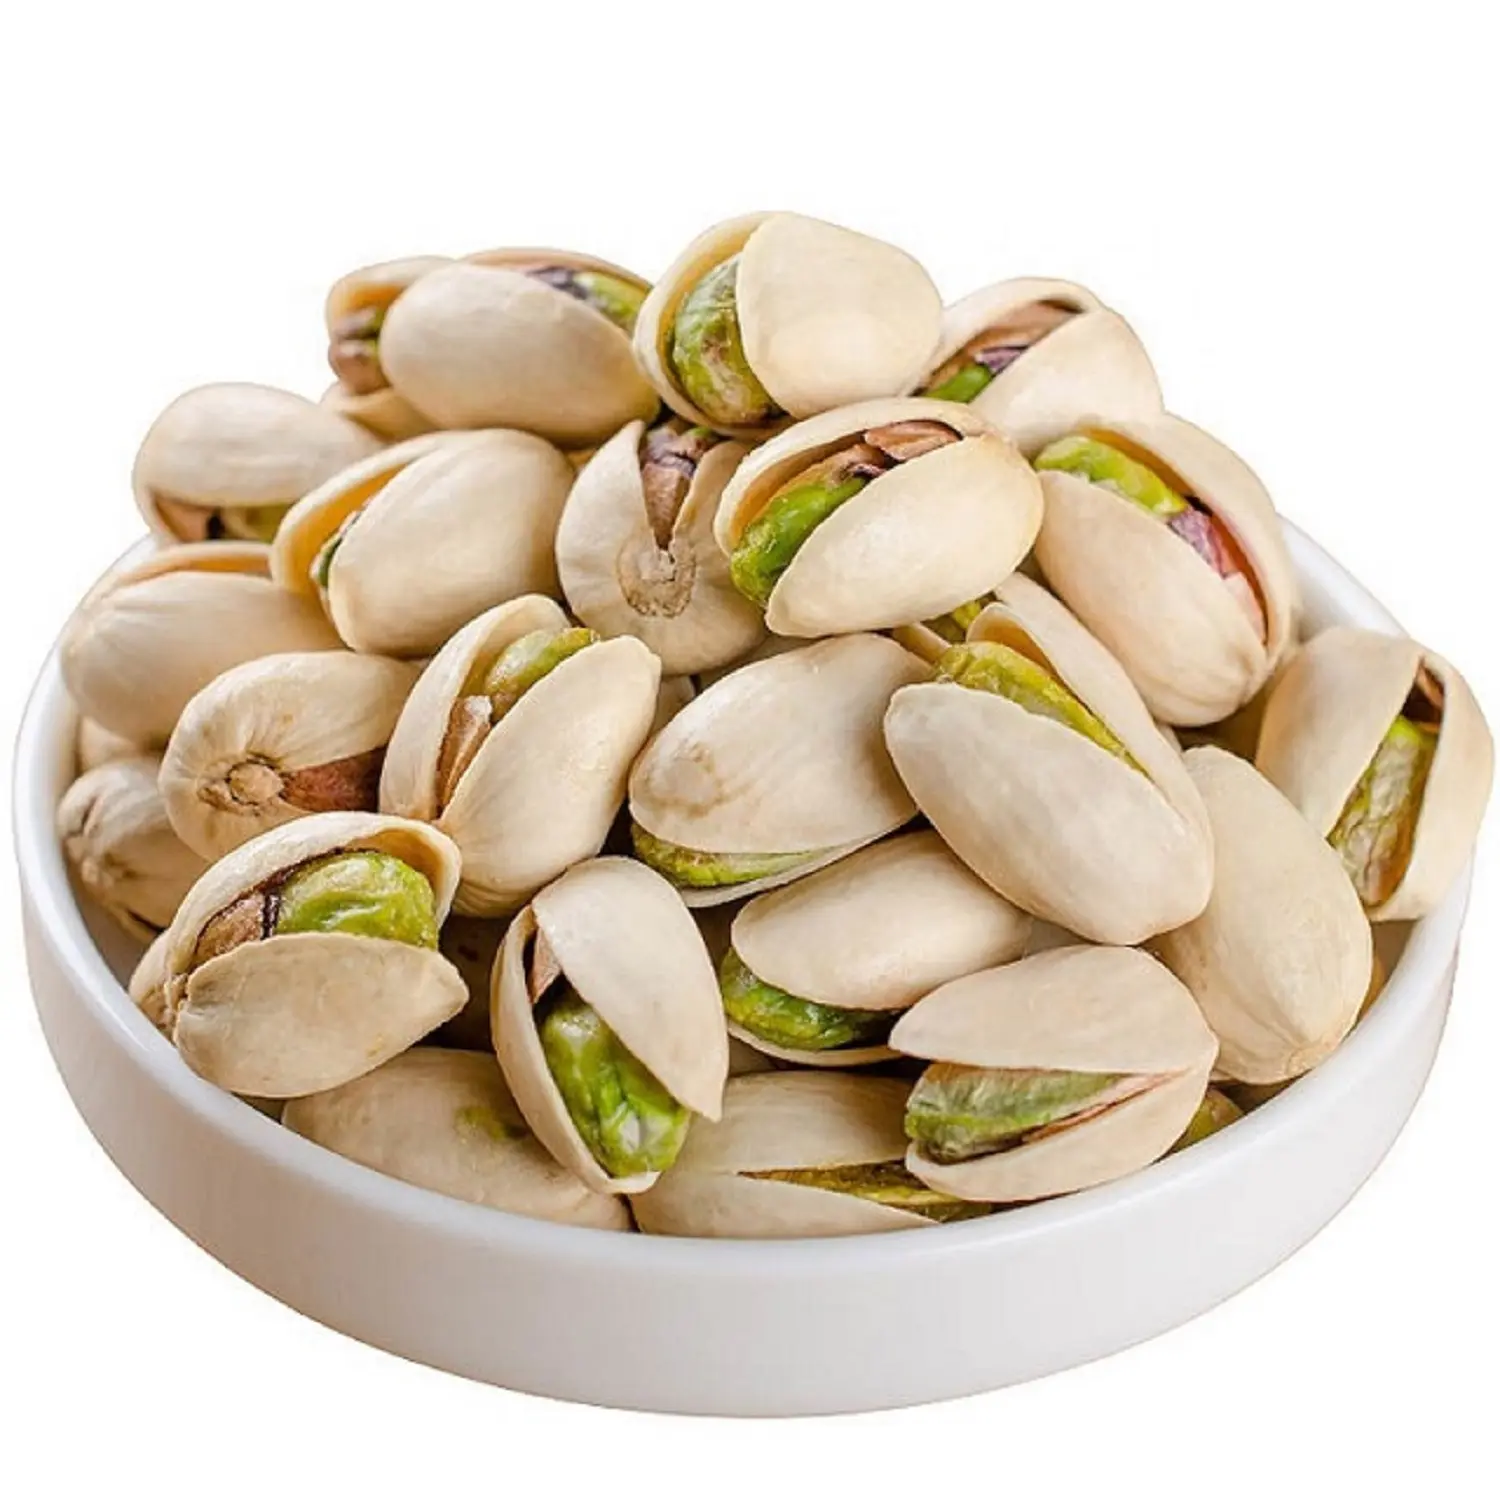 Kacang Pistachio grosir tas kualitas tinggi kemasan atas kacang mete mentah kacang cangkang terbuka biji Pistachio